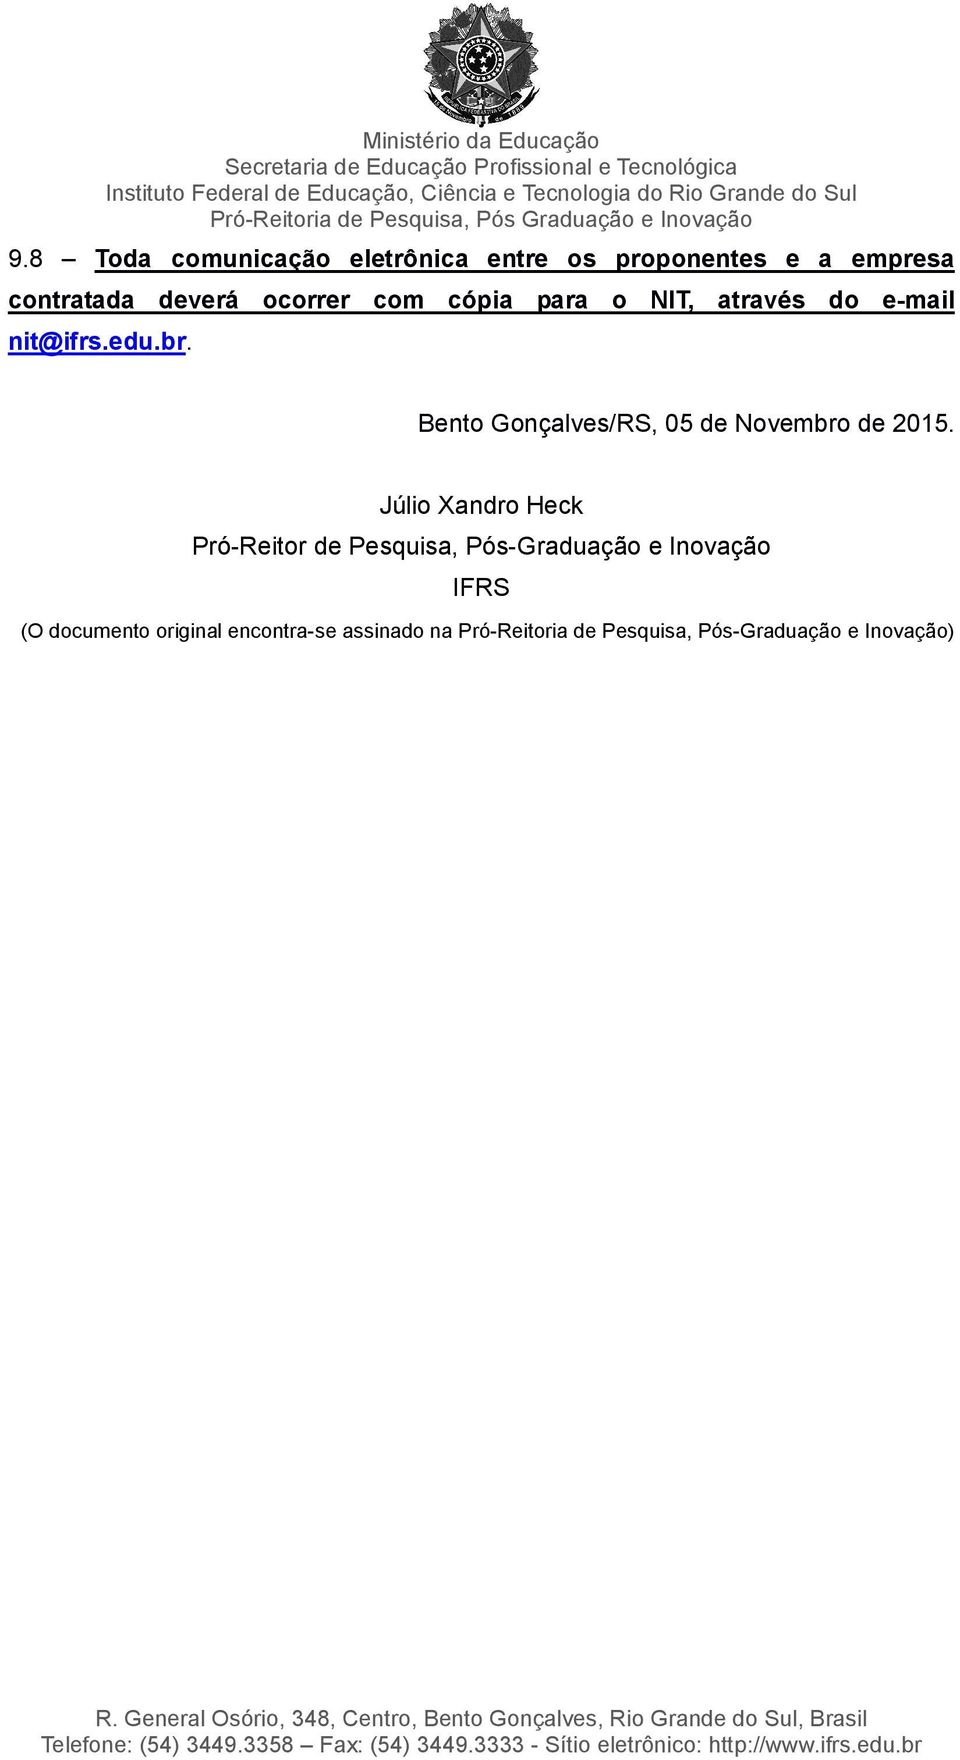 Bento Gonçalves/RS, 05 de Novembro de 2015.